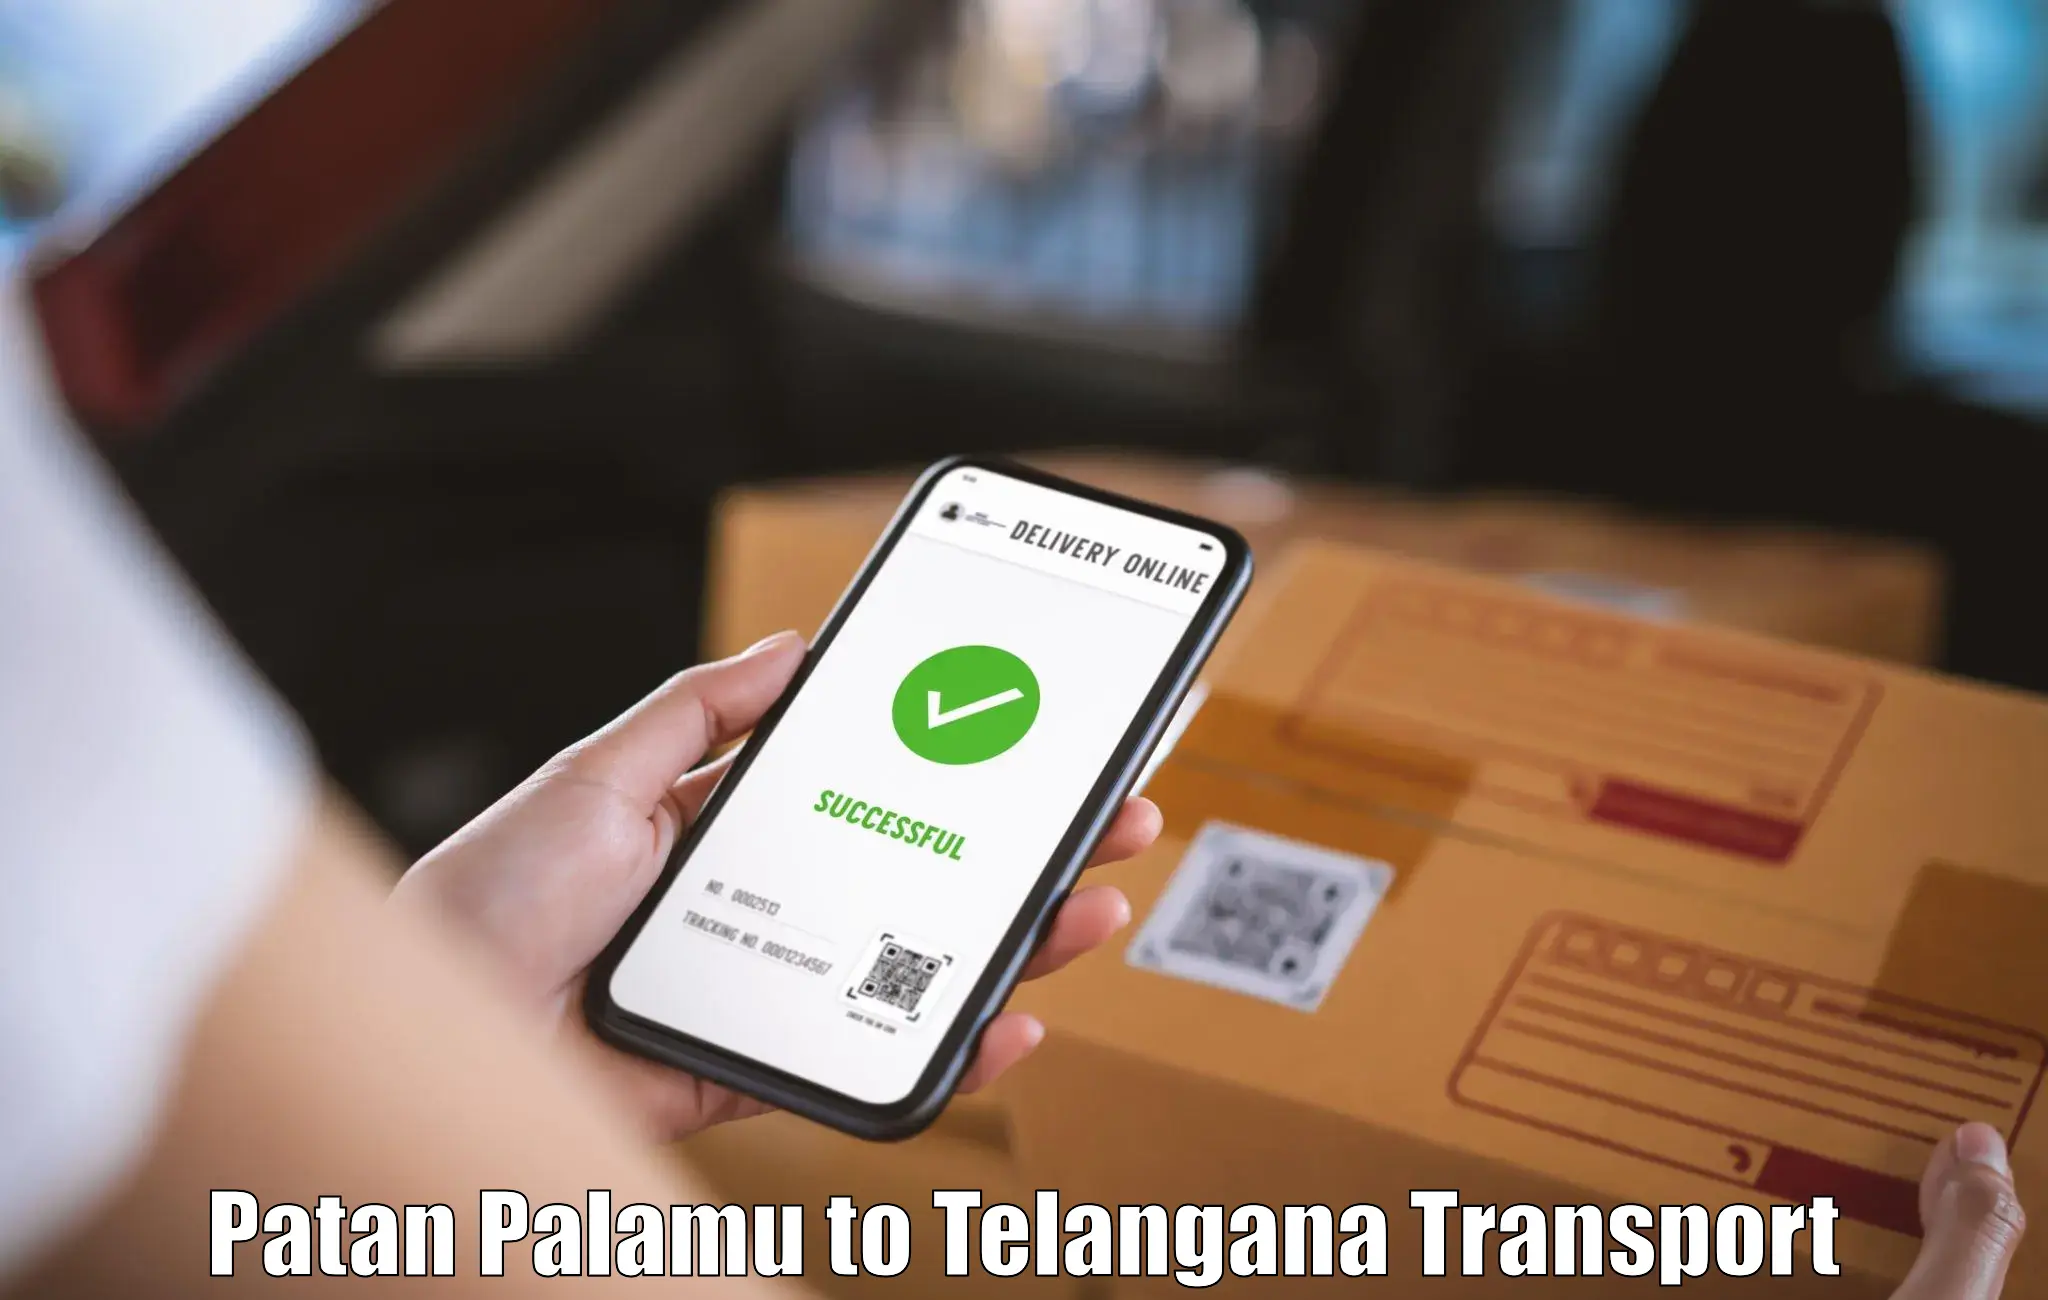 Transport in sharing Patan Palamu to Khammam